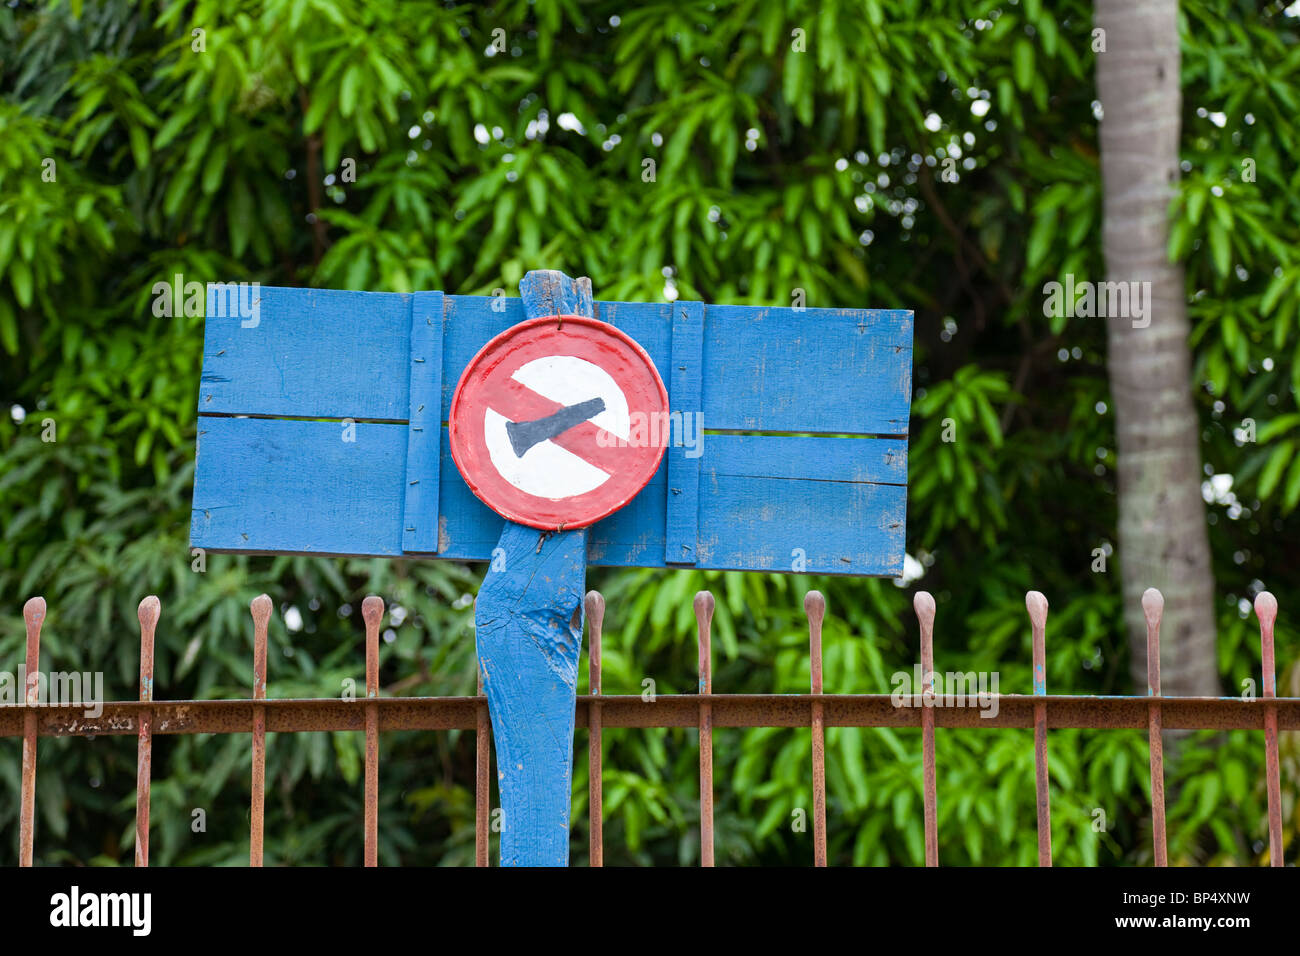 Handbemalte Straßenschild Signalisierung "kein Horn" - Provinz Kandal, Kambodscha Stockfoto